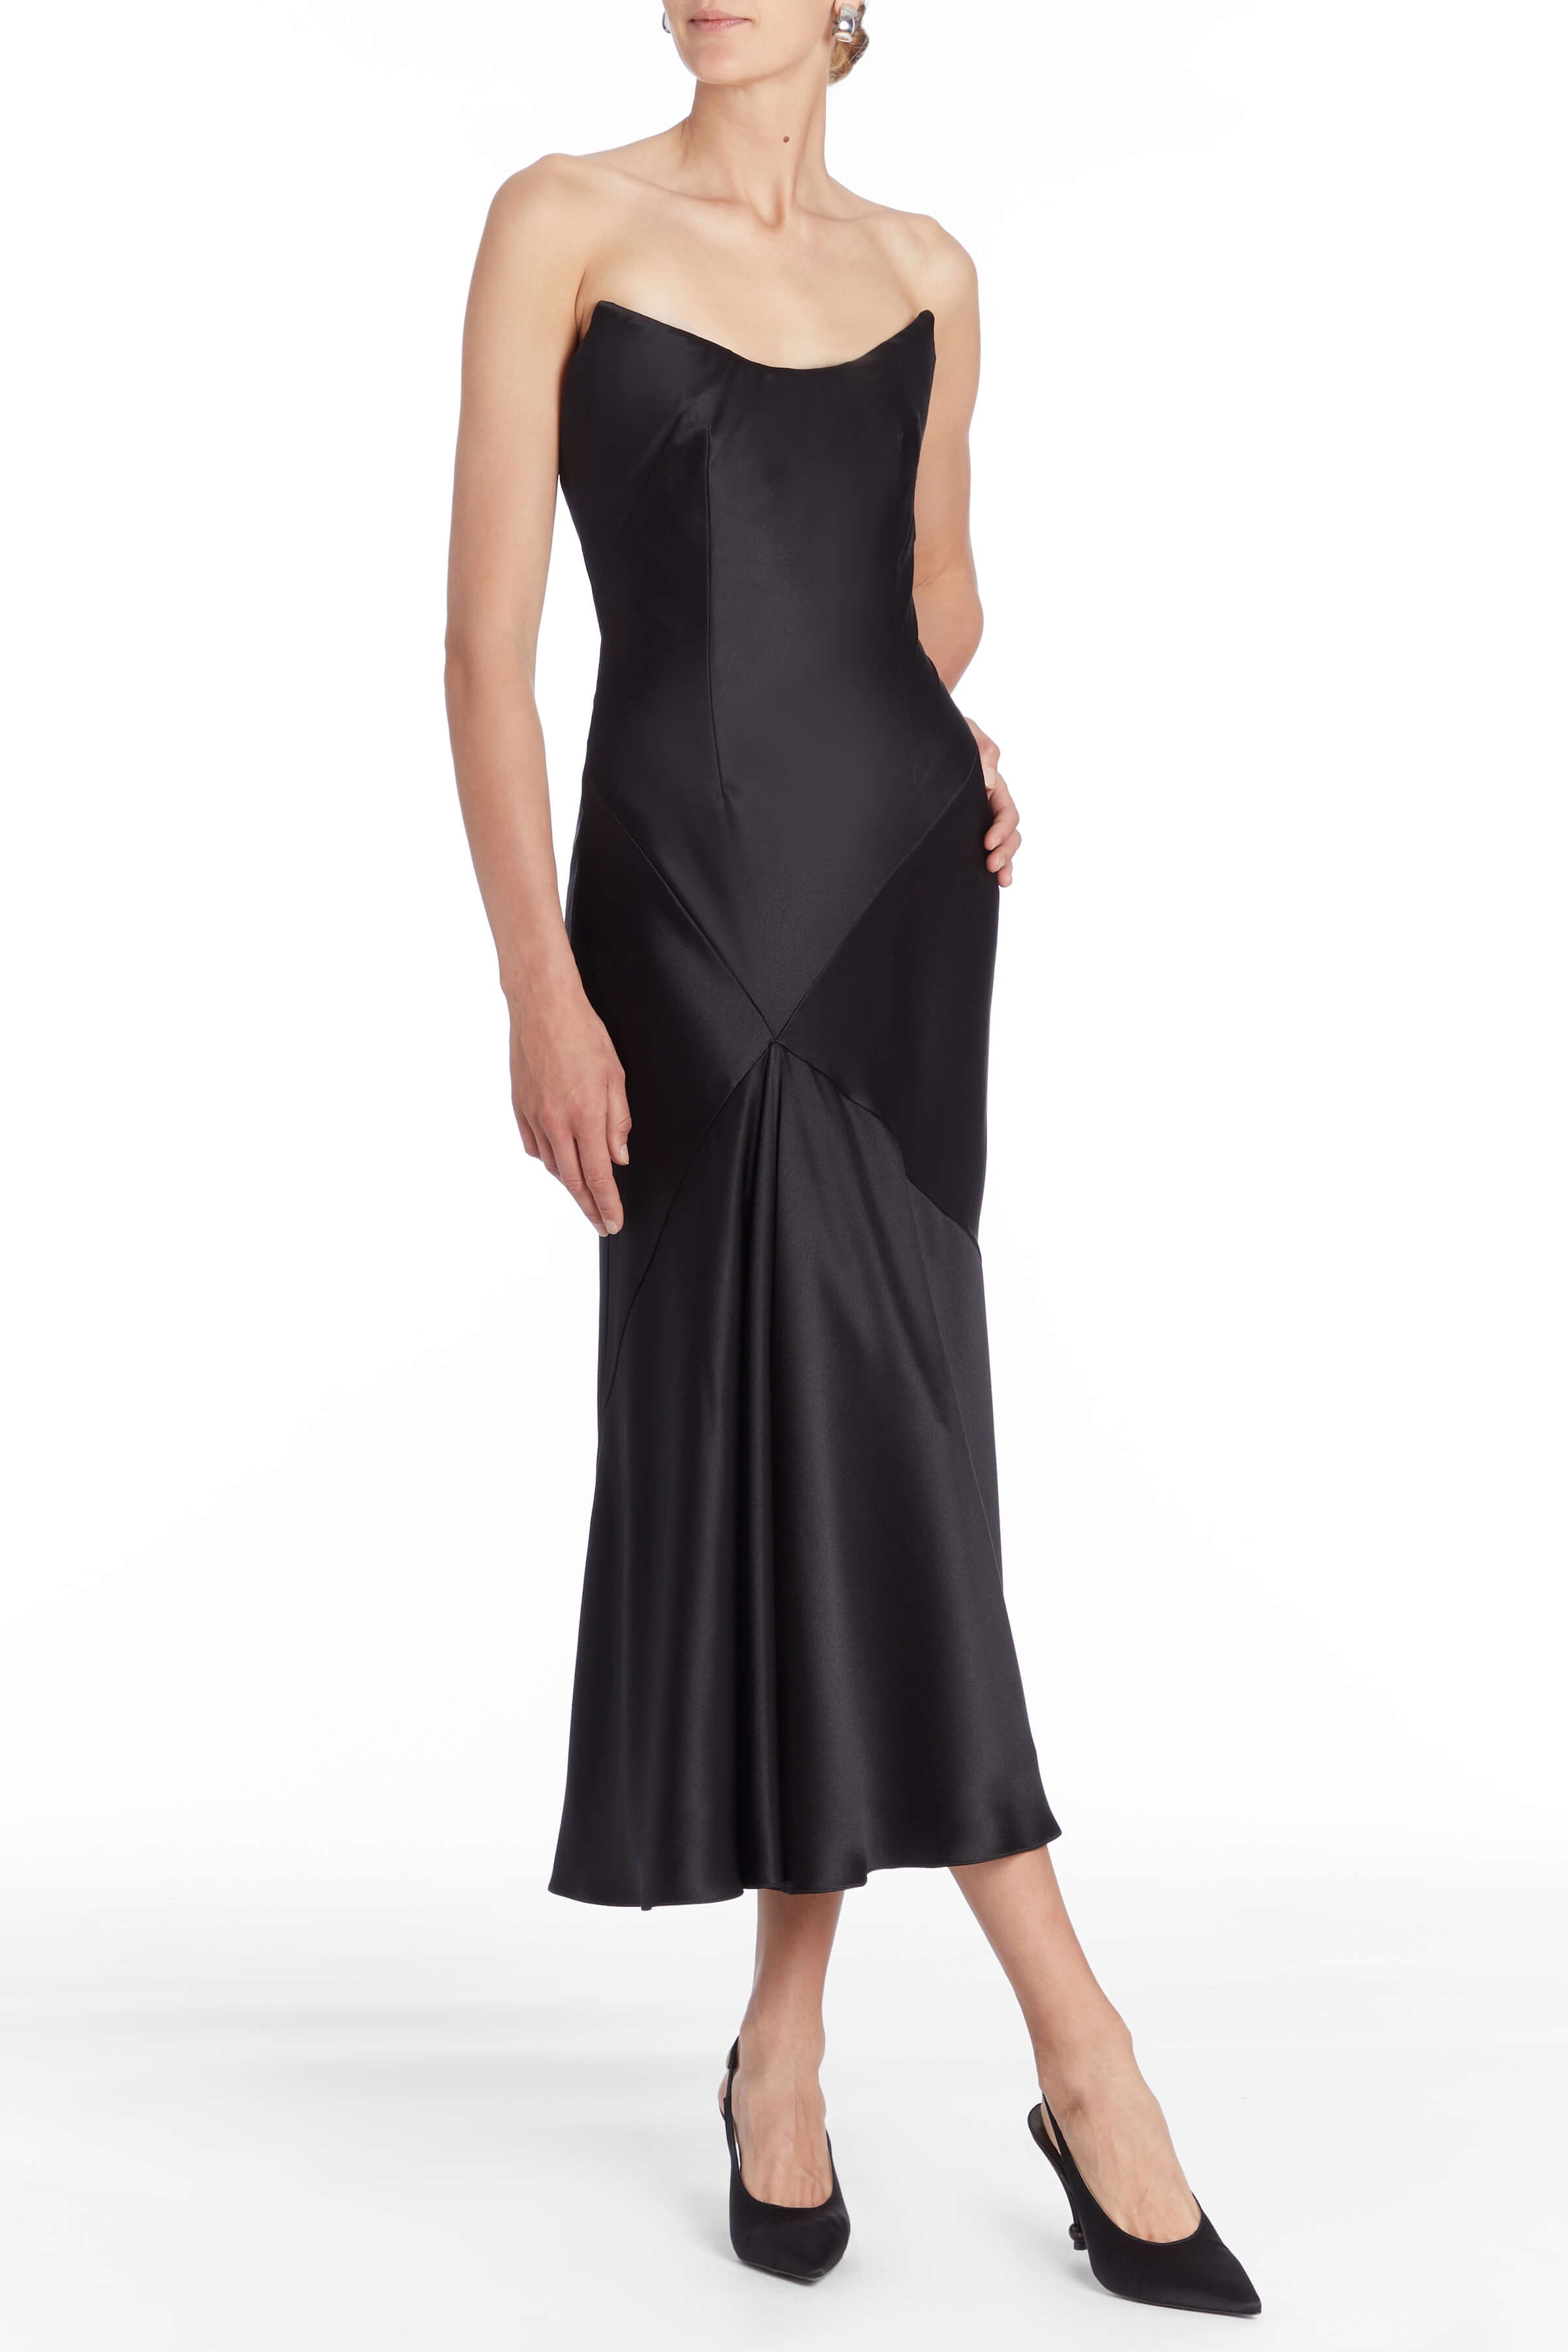 Loretta Black Satin Strapless Midi Dress